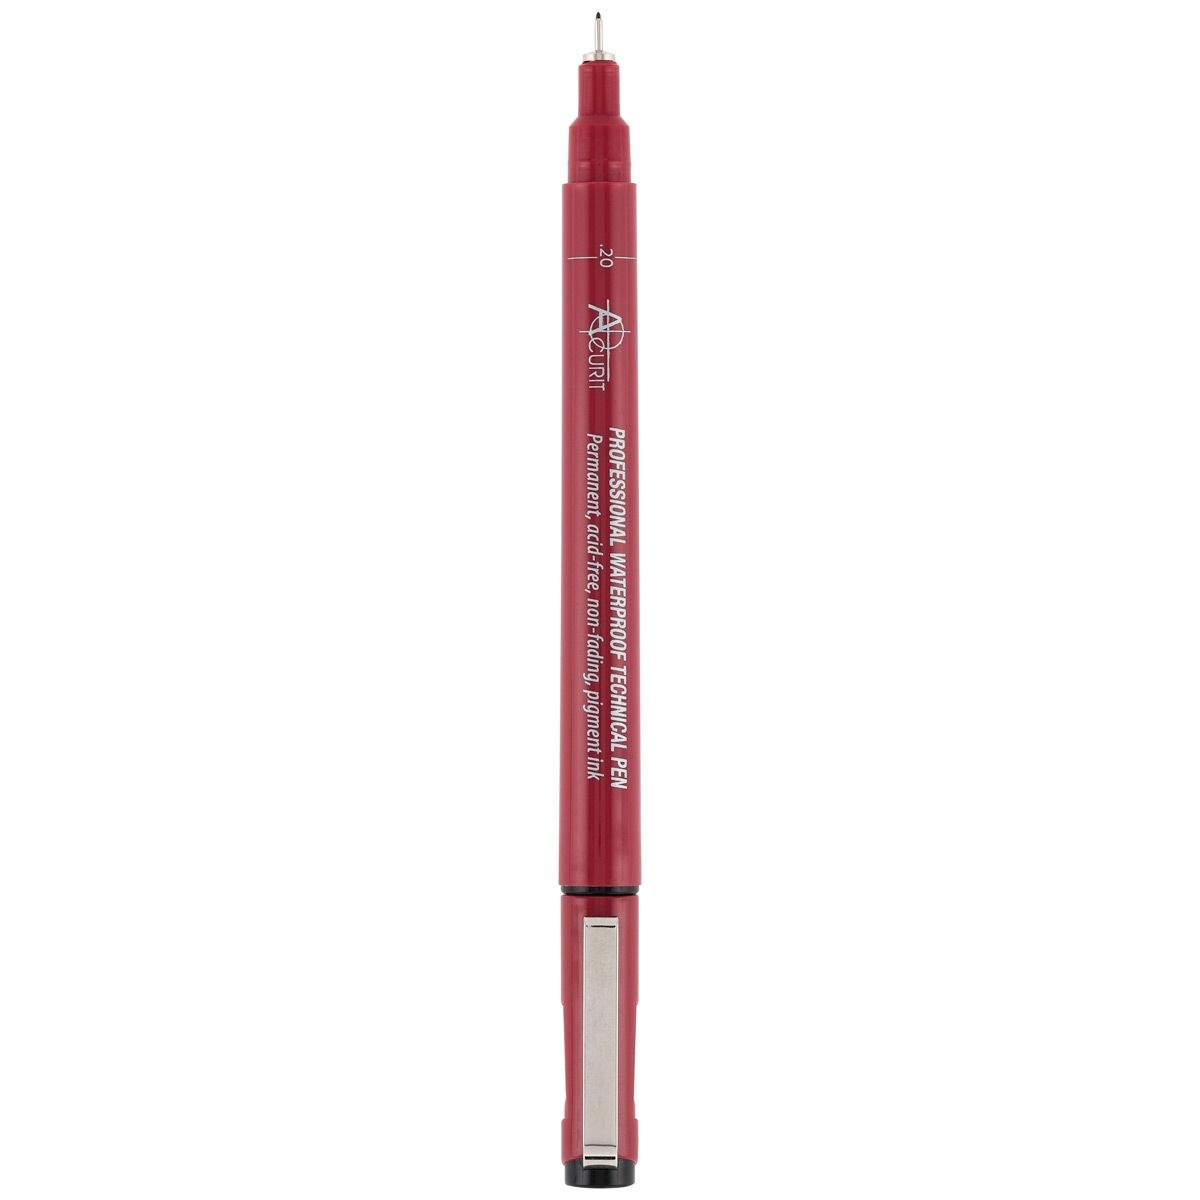 Waterproof Technical Pen - 0.2 Mm